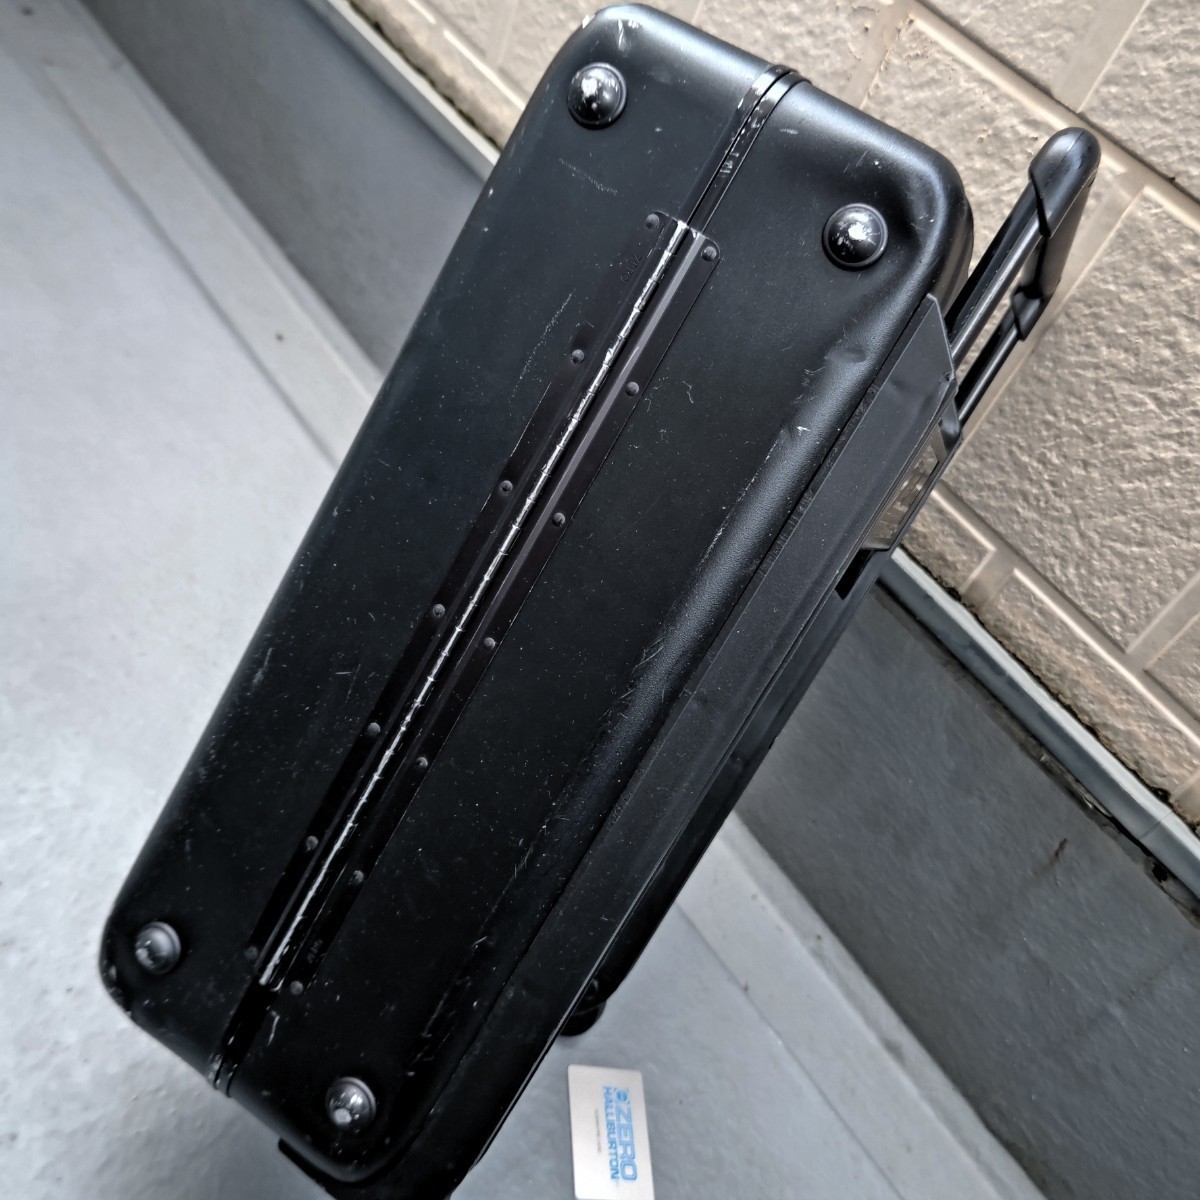 ZERO HALLIBURTON Carry case machine inside bringing in ZEROLLER aluminium black Zero Halliburton retro 